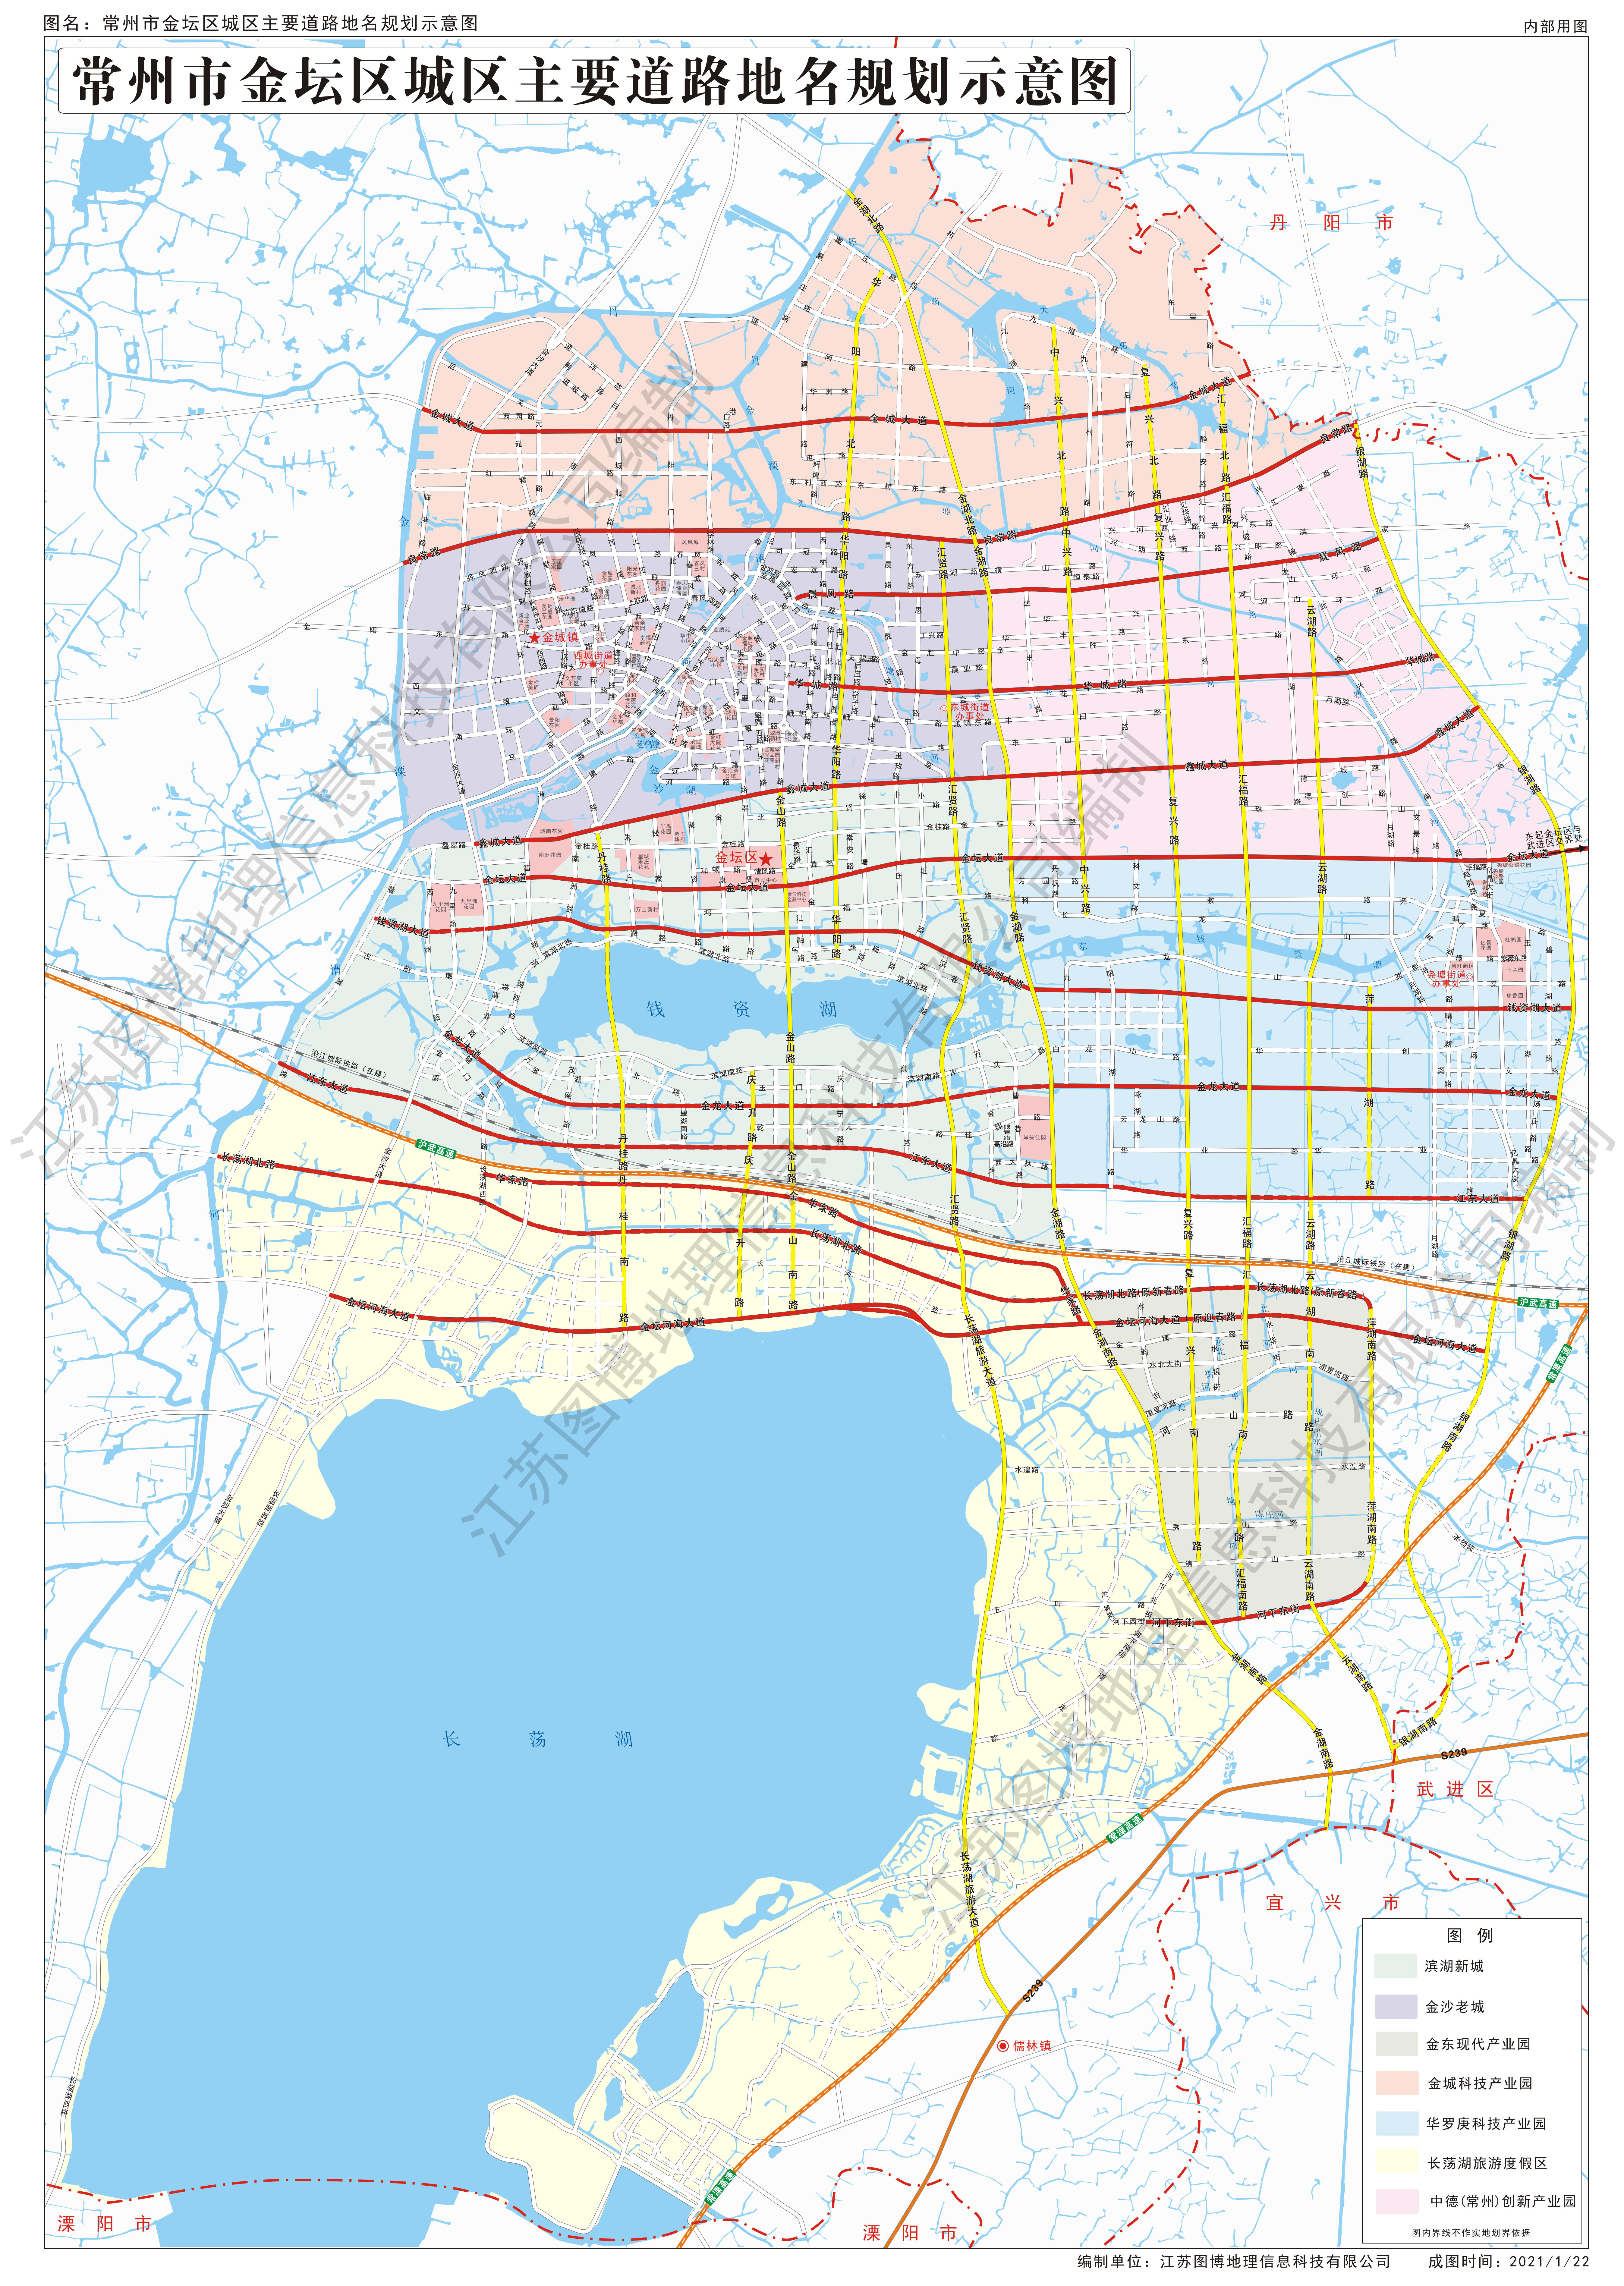 常州市金坛区城区主要道路地名规划公示